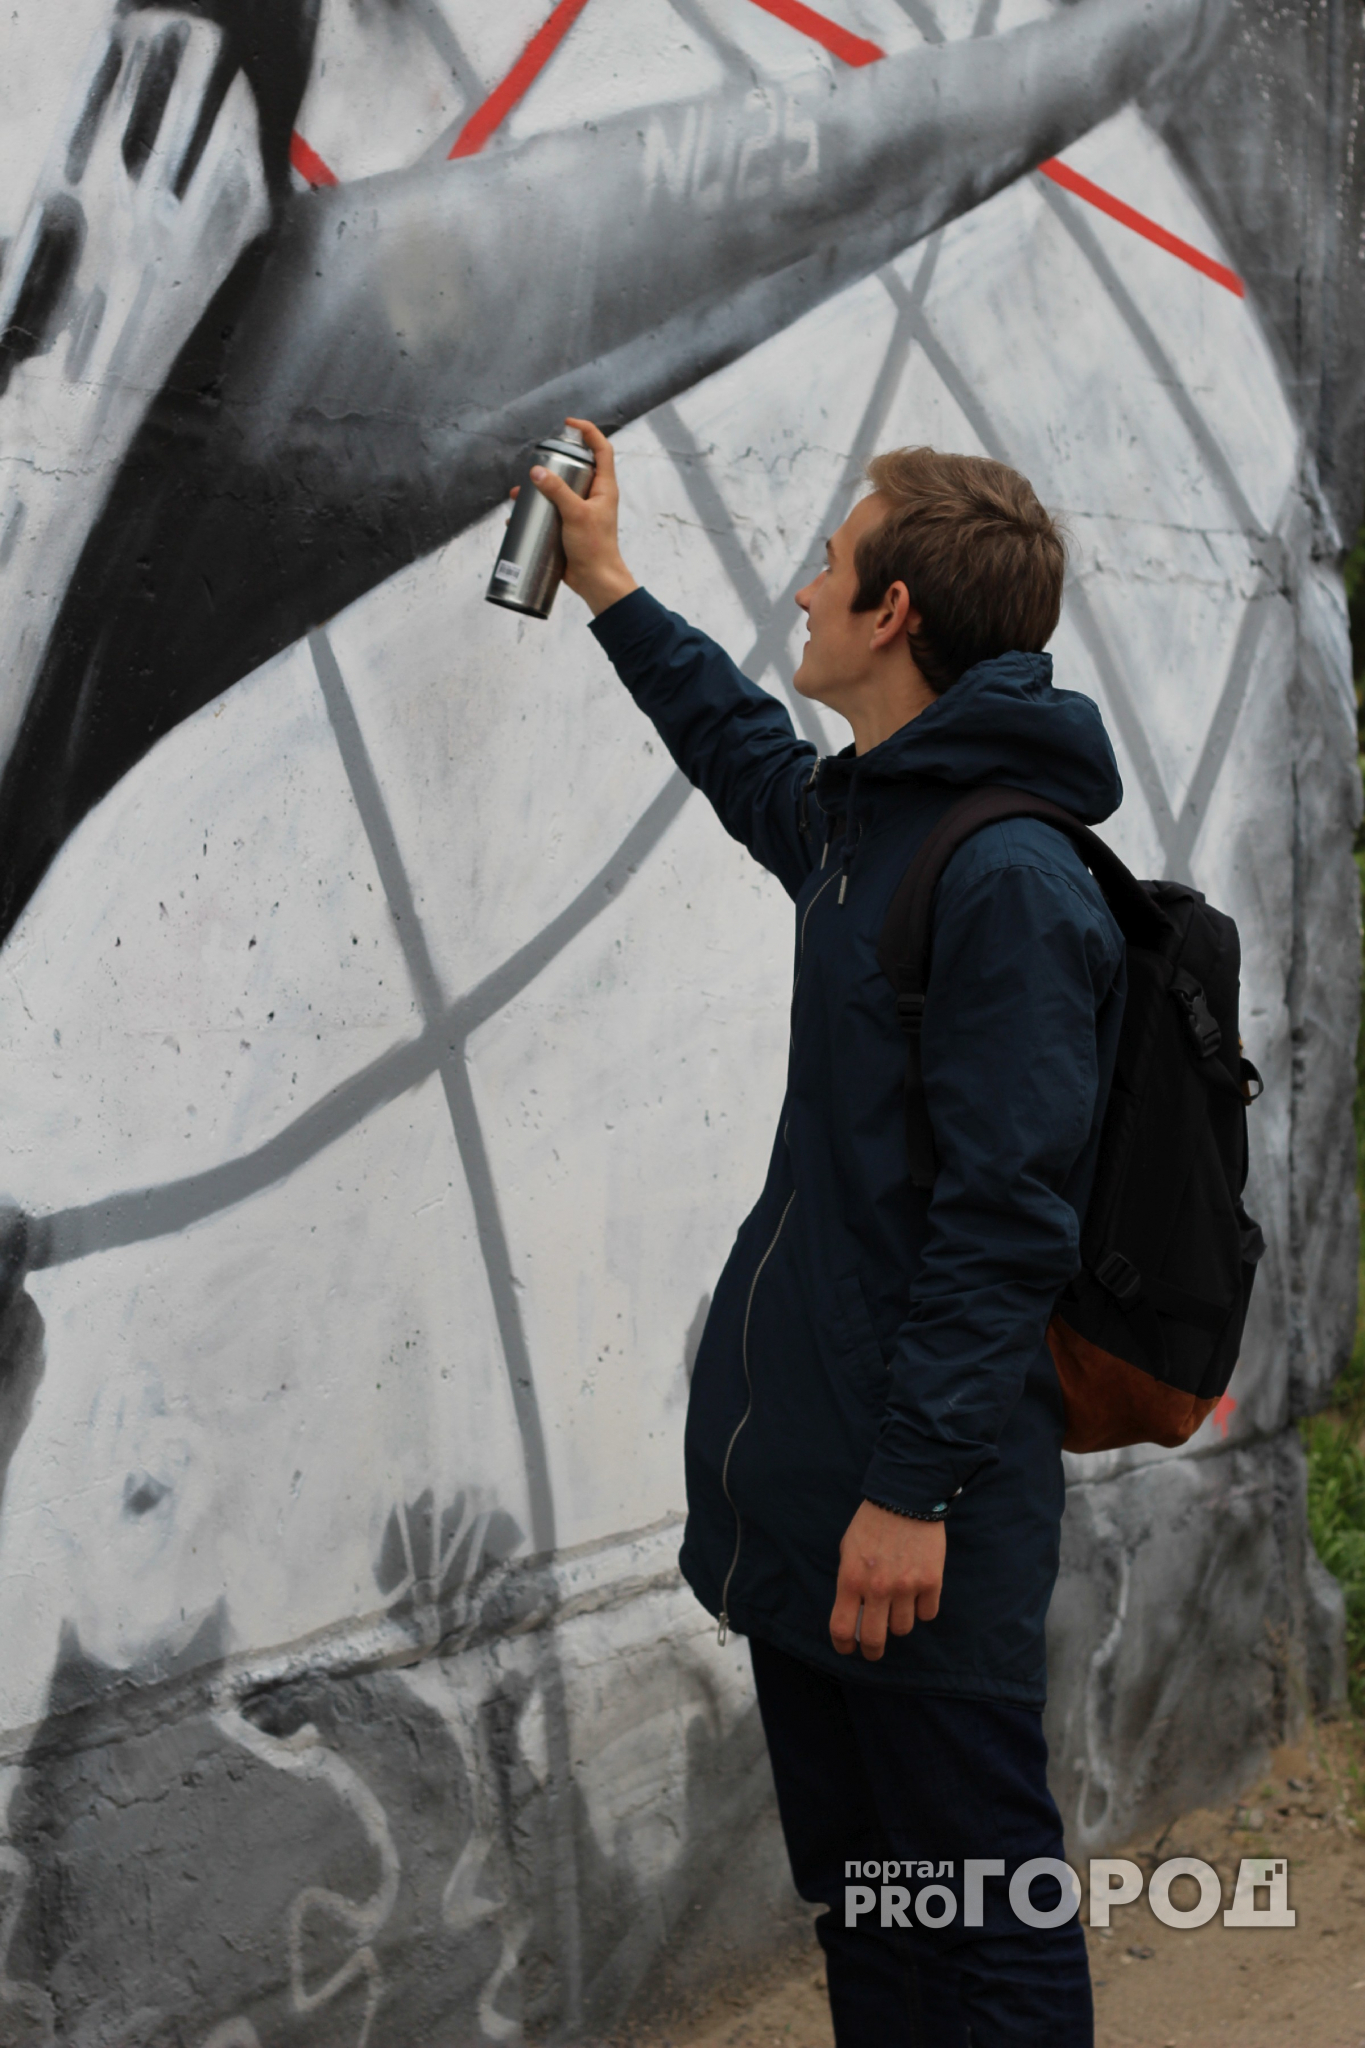 Нижегородская полиция скрутила московских художников на фестивале стрит-арта